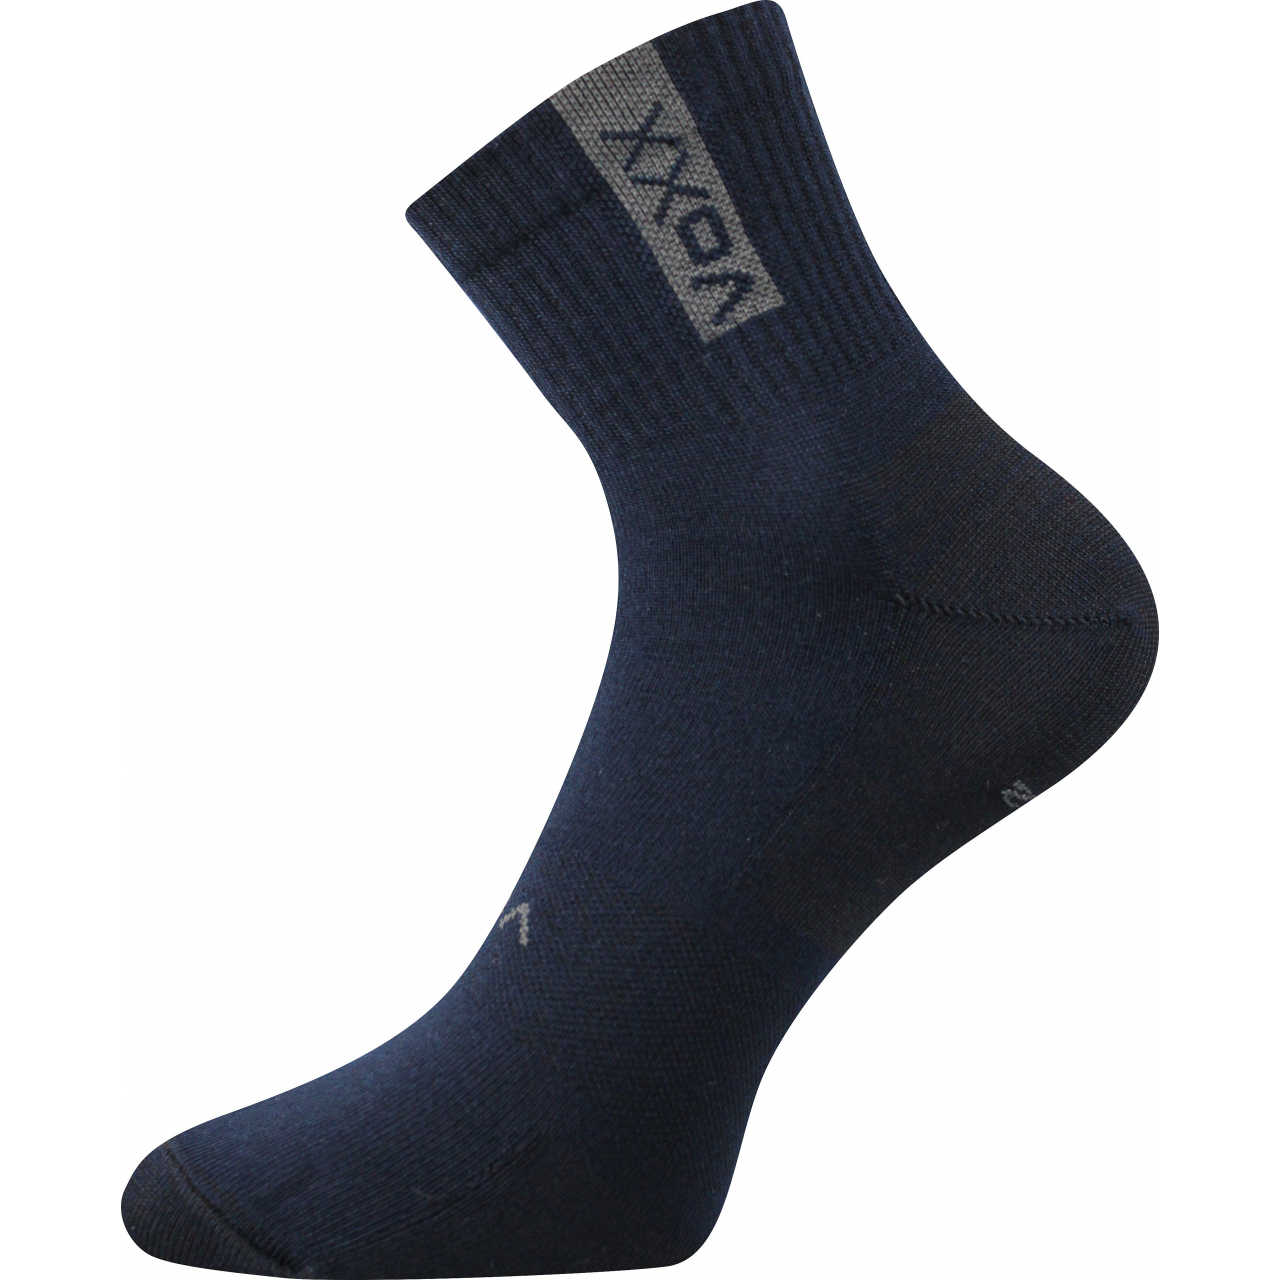 Ponožky sportovní unisex Voxx Brox - tmavě modré, 39-42